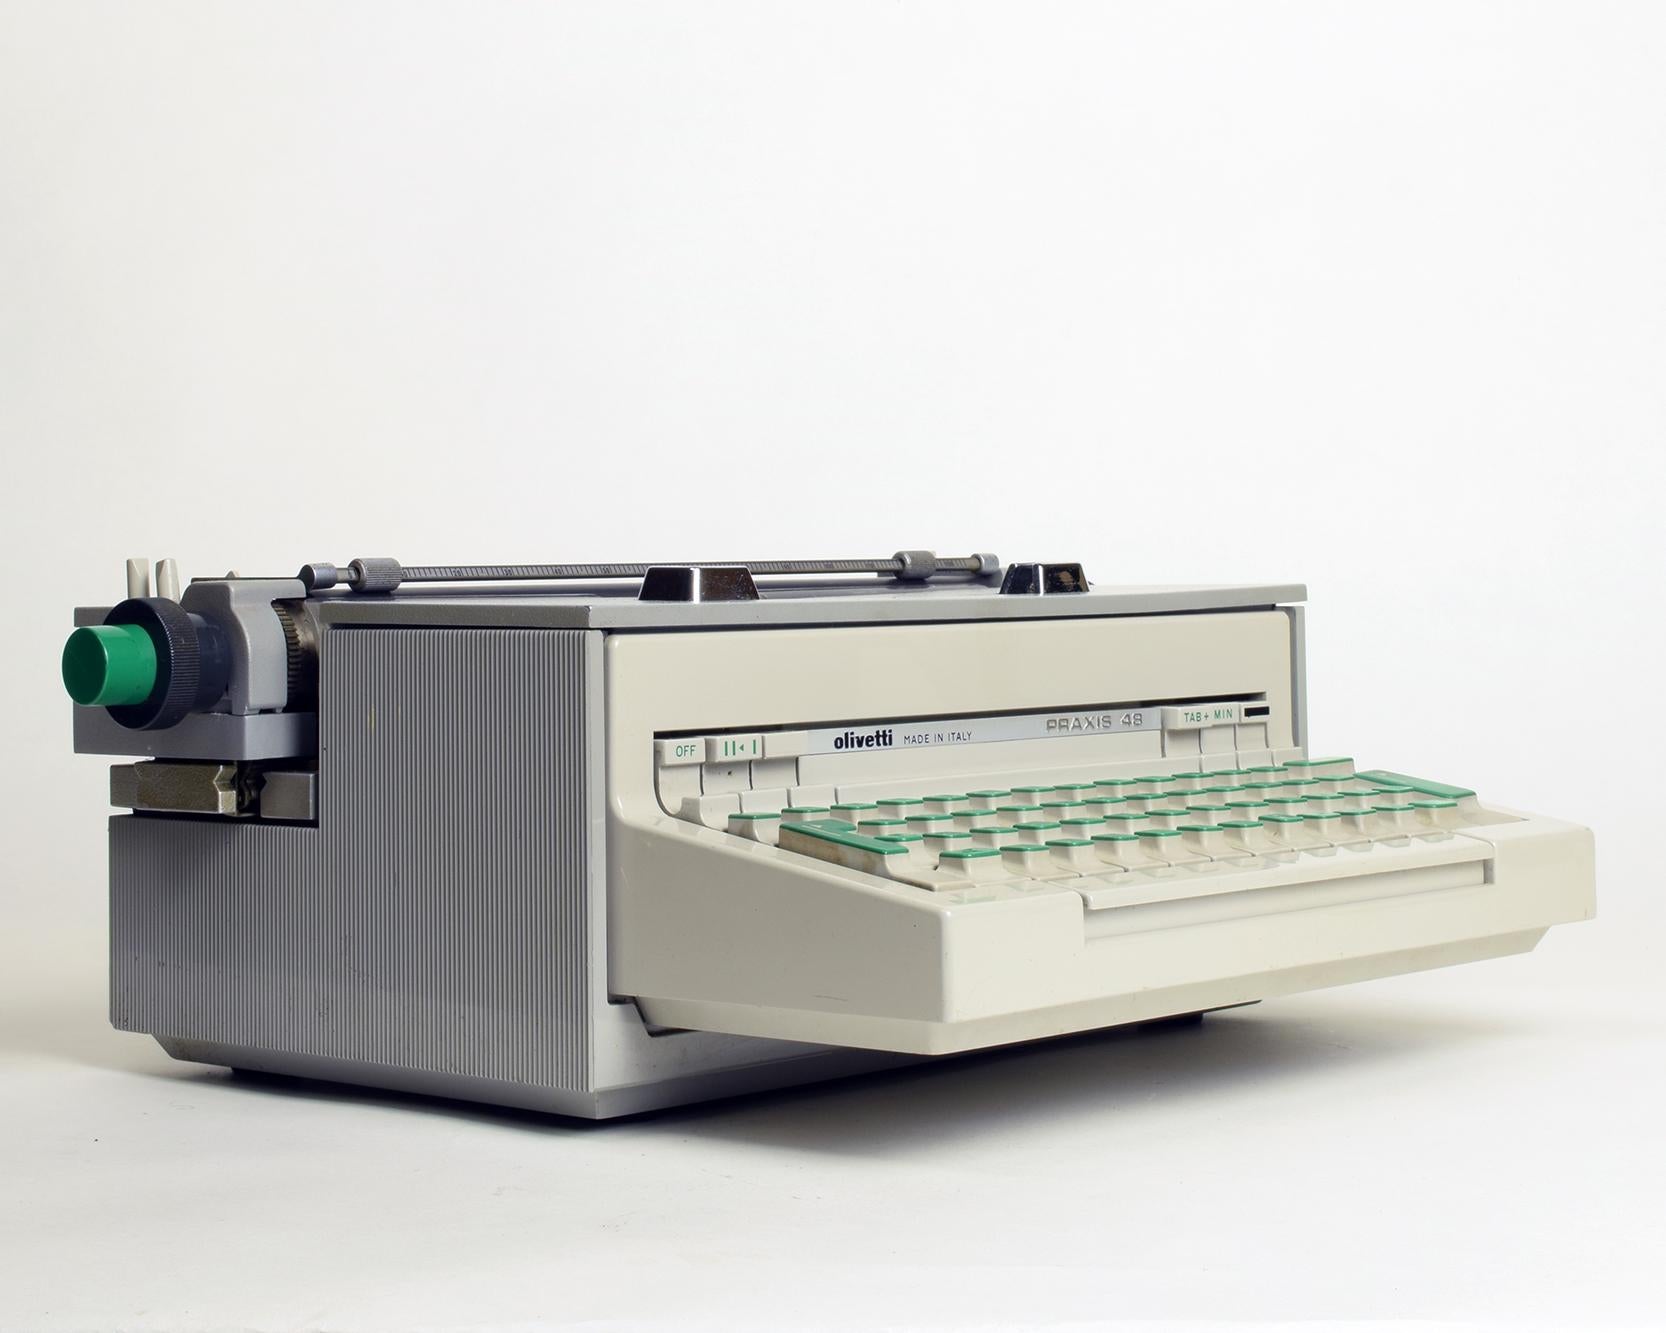 Painted Ettore Sottsass & Hans Von Klier, ‘Praxis 48’ Typewriter, Olivetti, 1964